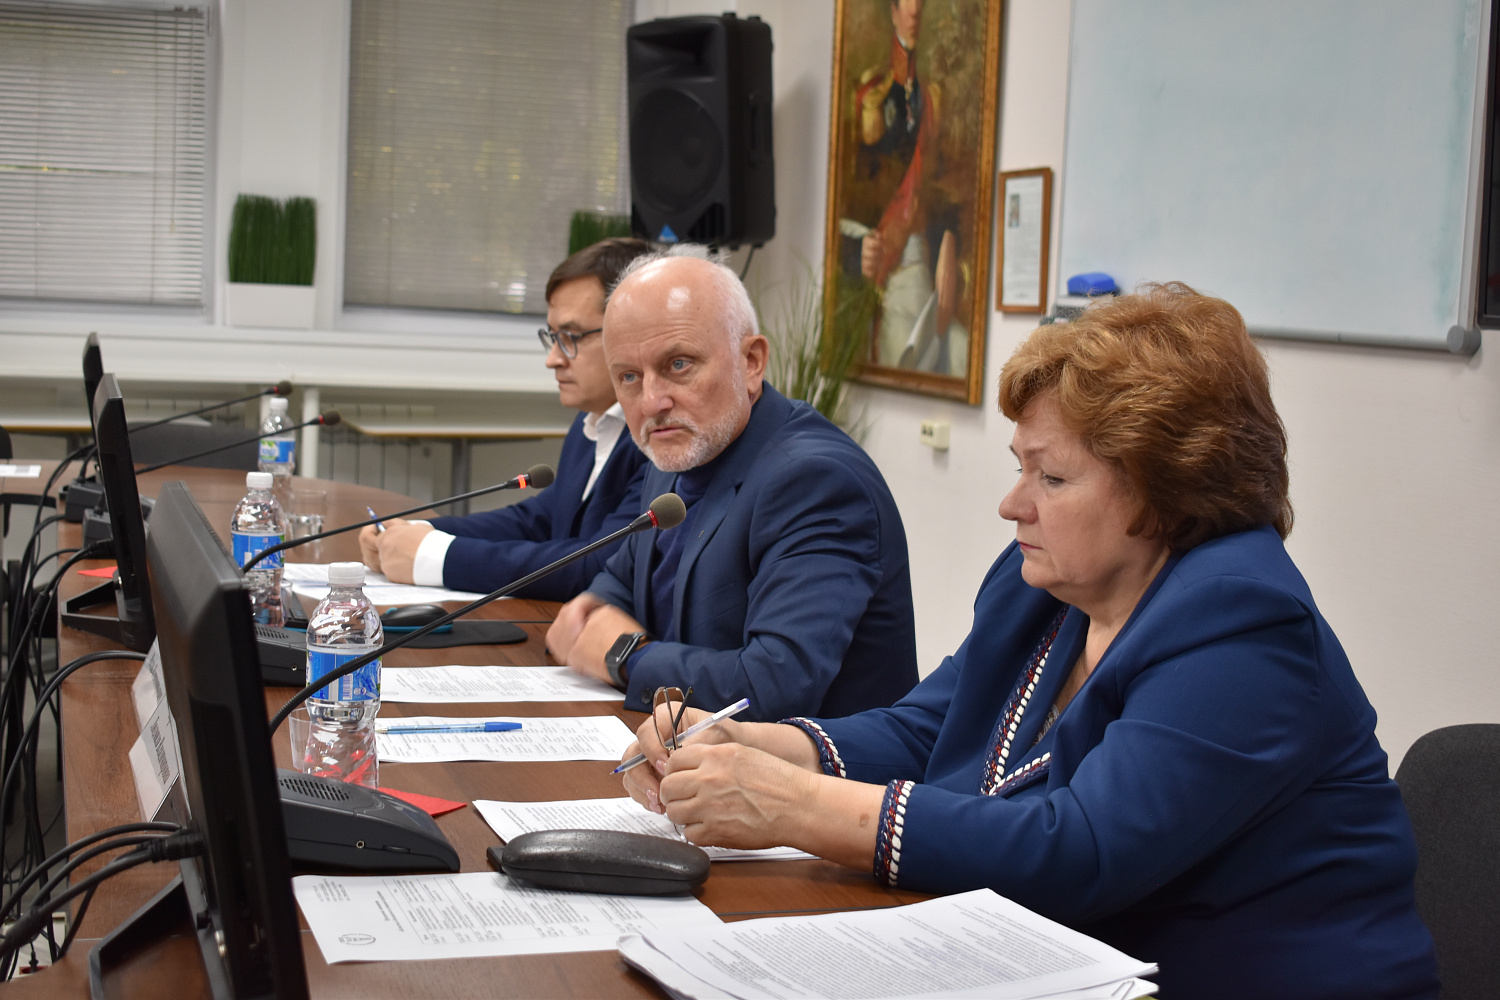 29 сентября 2022 года в ТПП Чувашской Республики состоялось совещание на тему: «Качество и безопасность пищевой продукции».